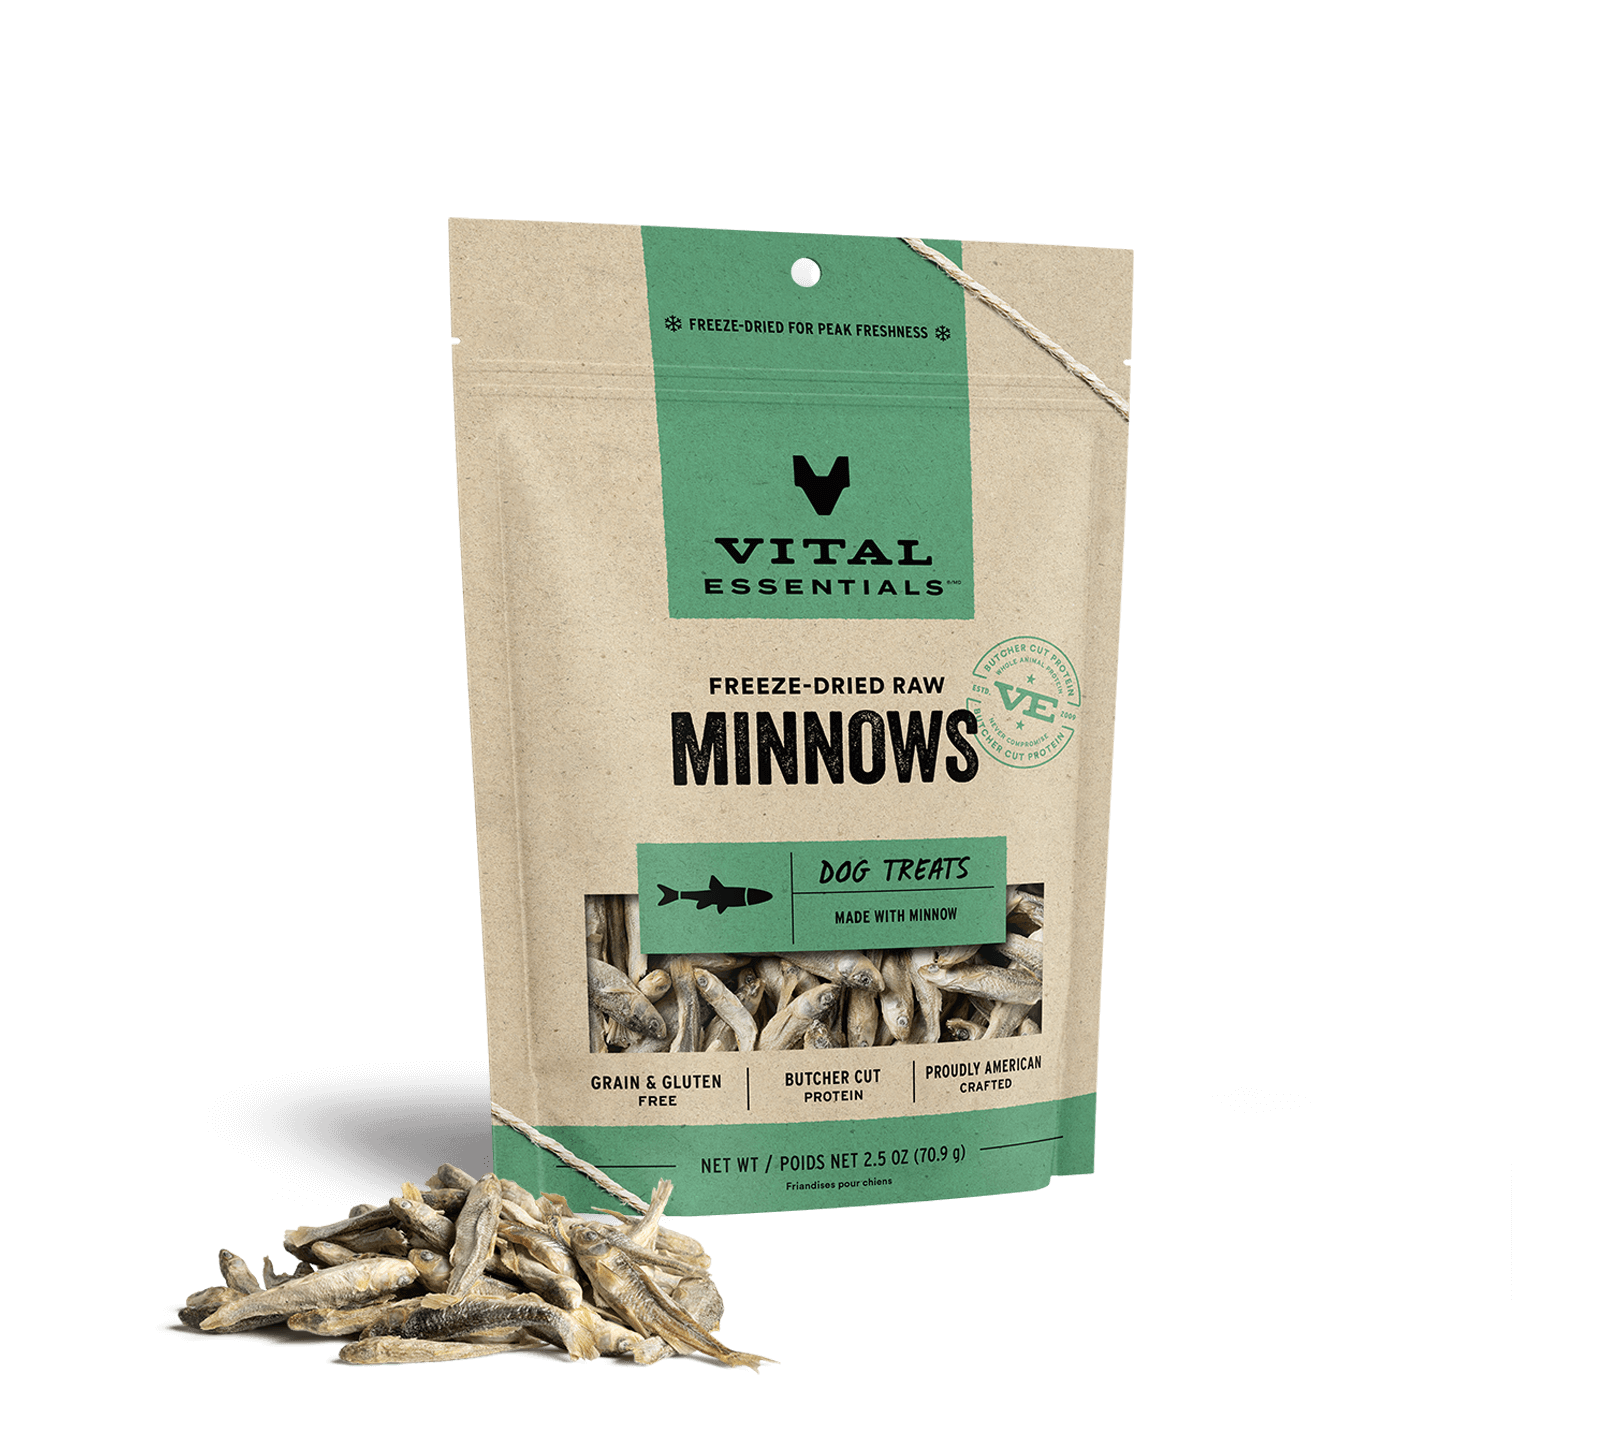 Vital Essentials Freeze-Dried Minnows Dog Treats, 2.5 oz - Health/First Aid